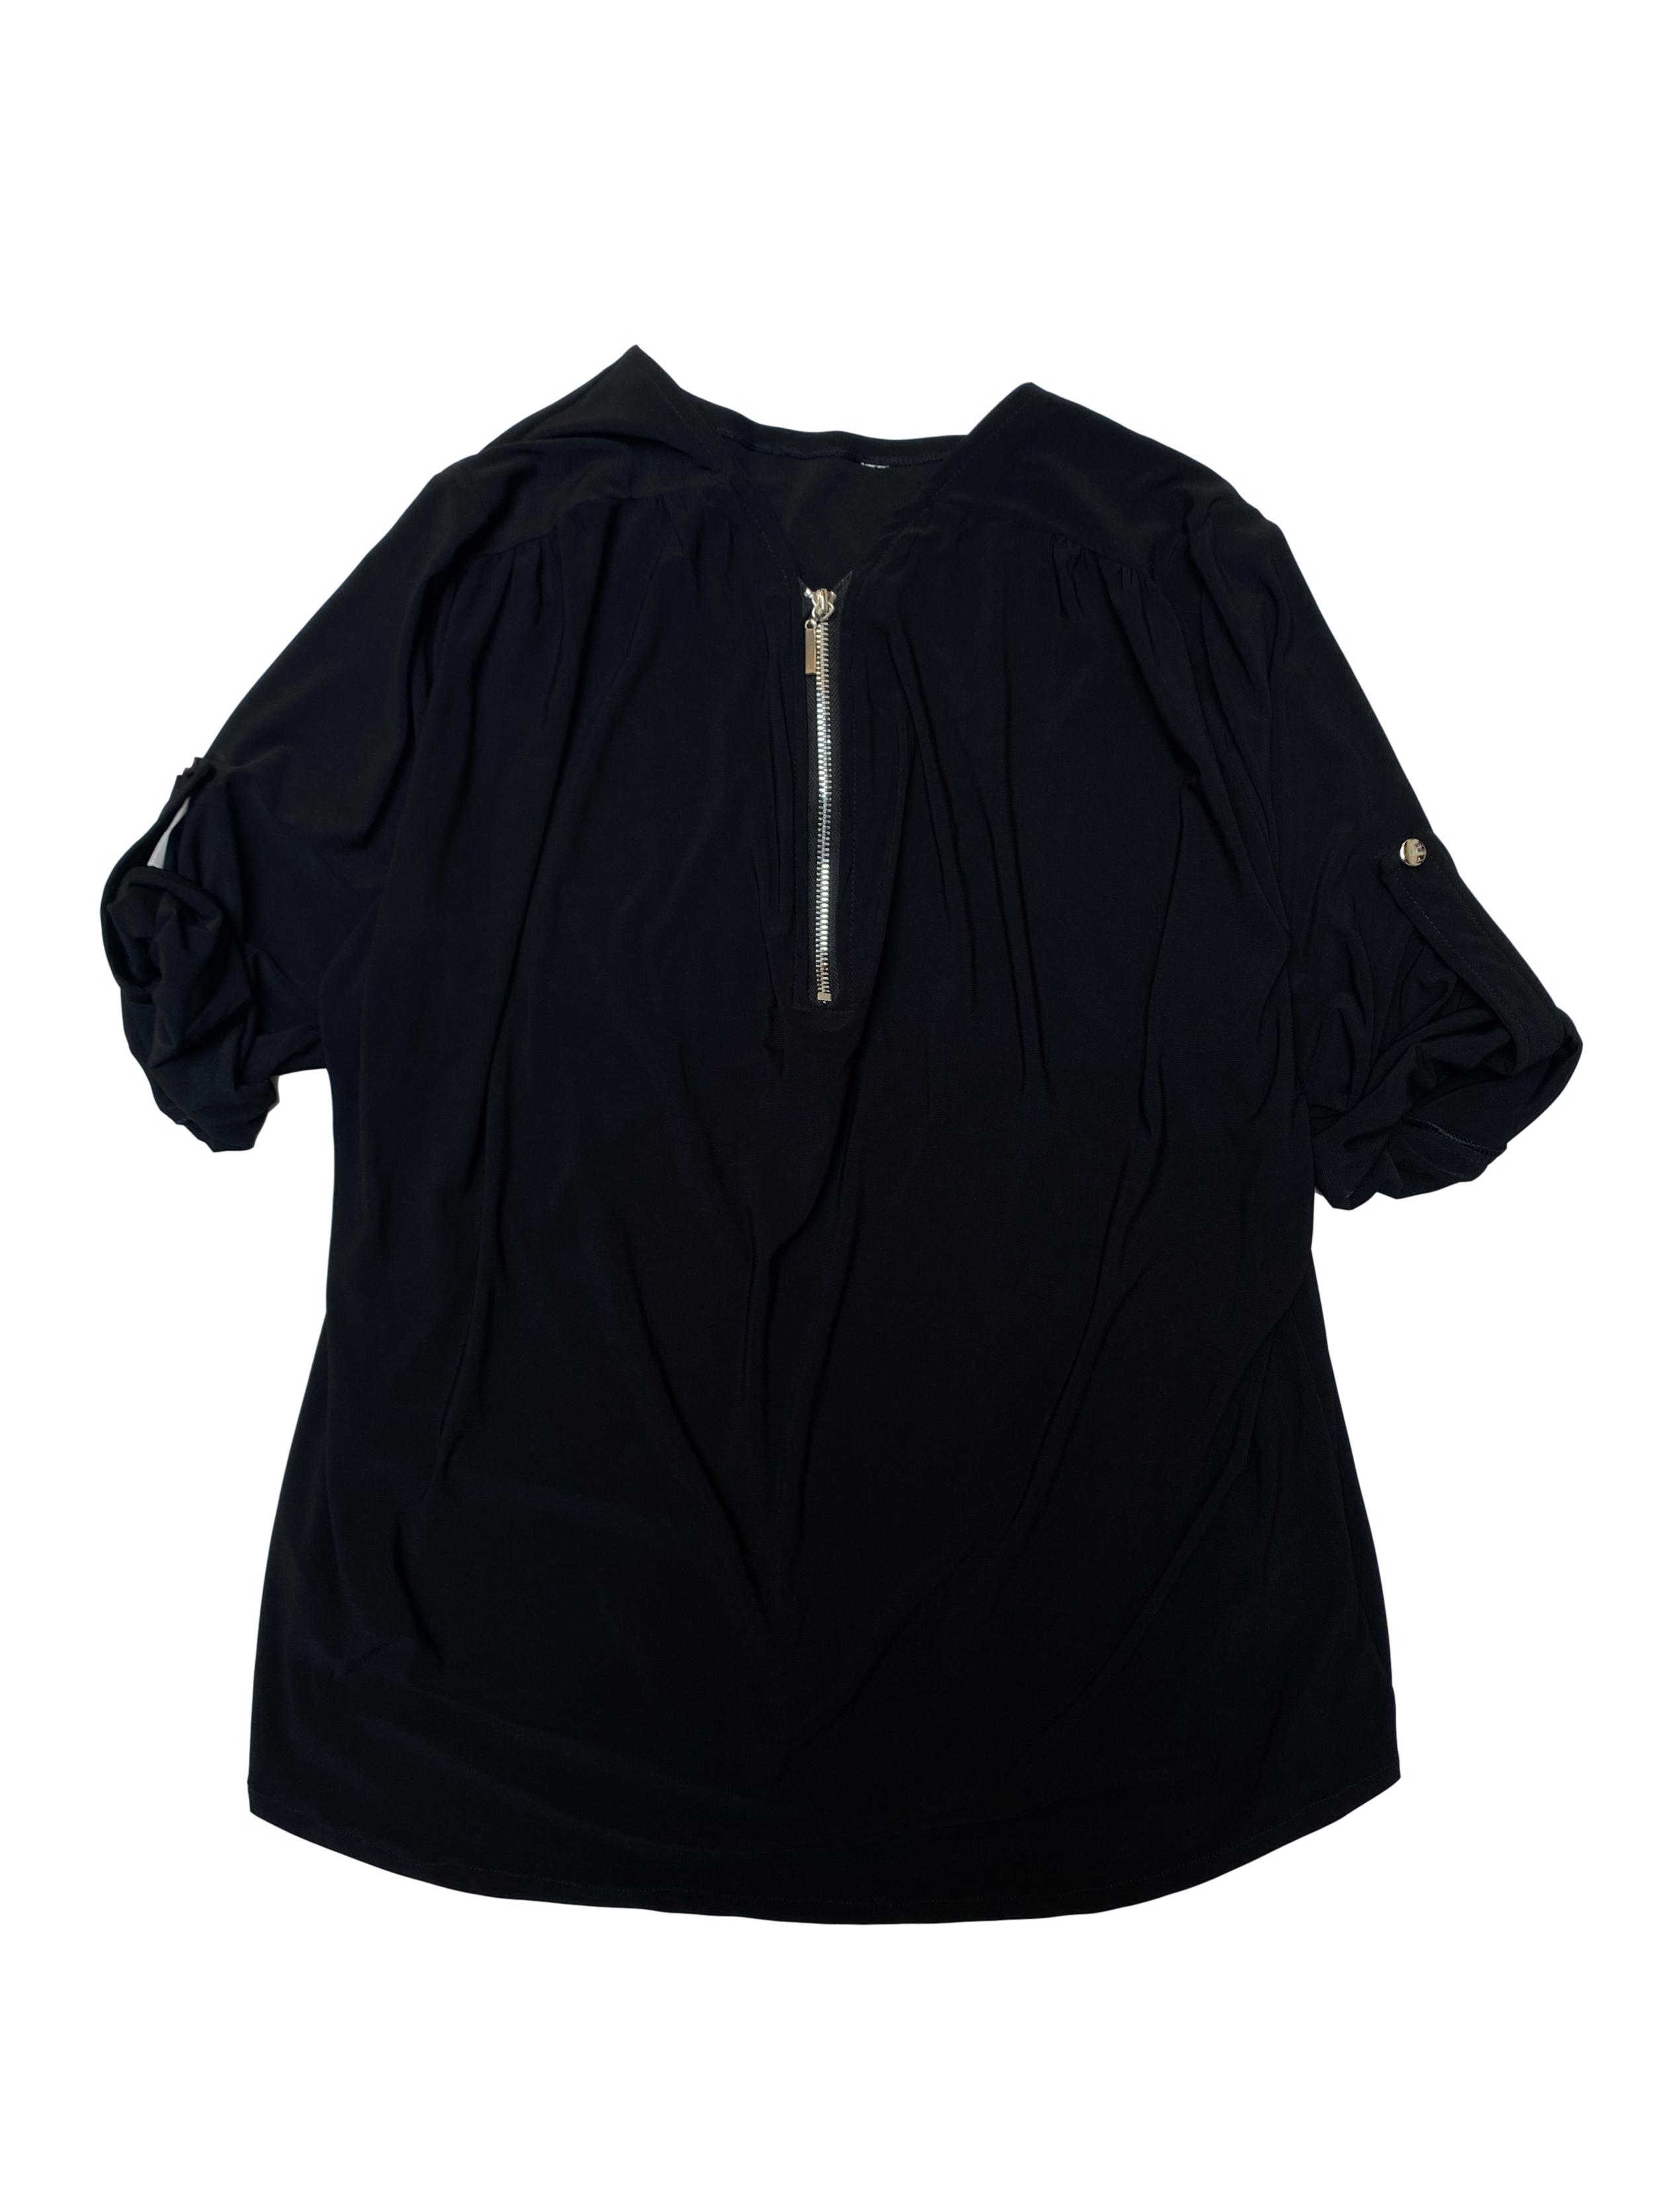 Blusa negra stretch con cierre en el cuello y manga 3/4 con botón regulable